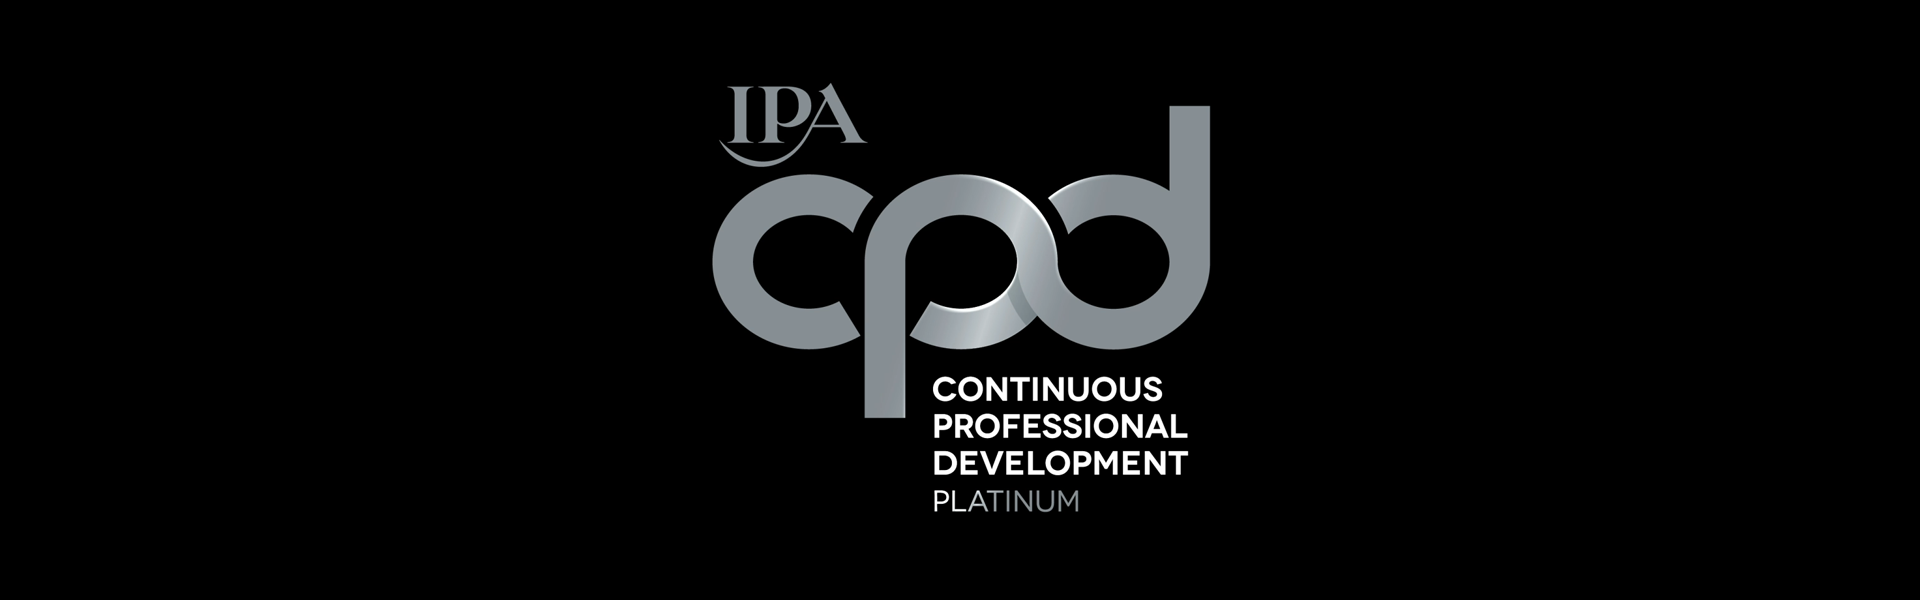 elvis achieves IPA CPD Platinum Accreditation